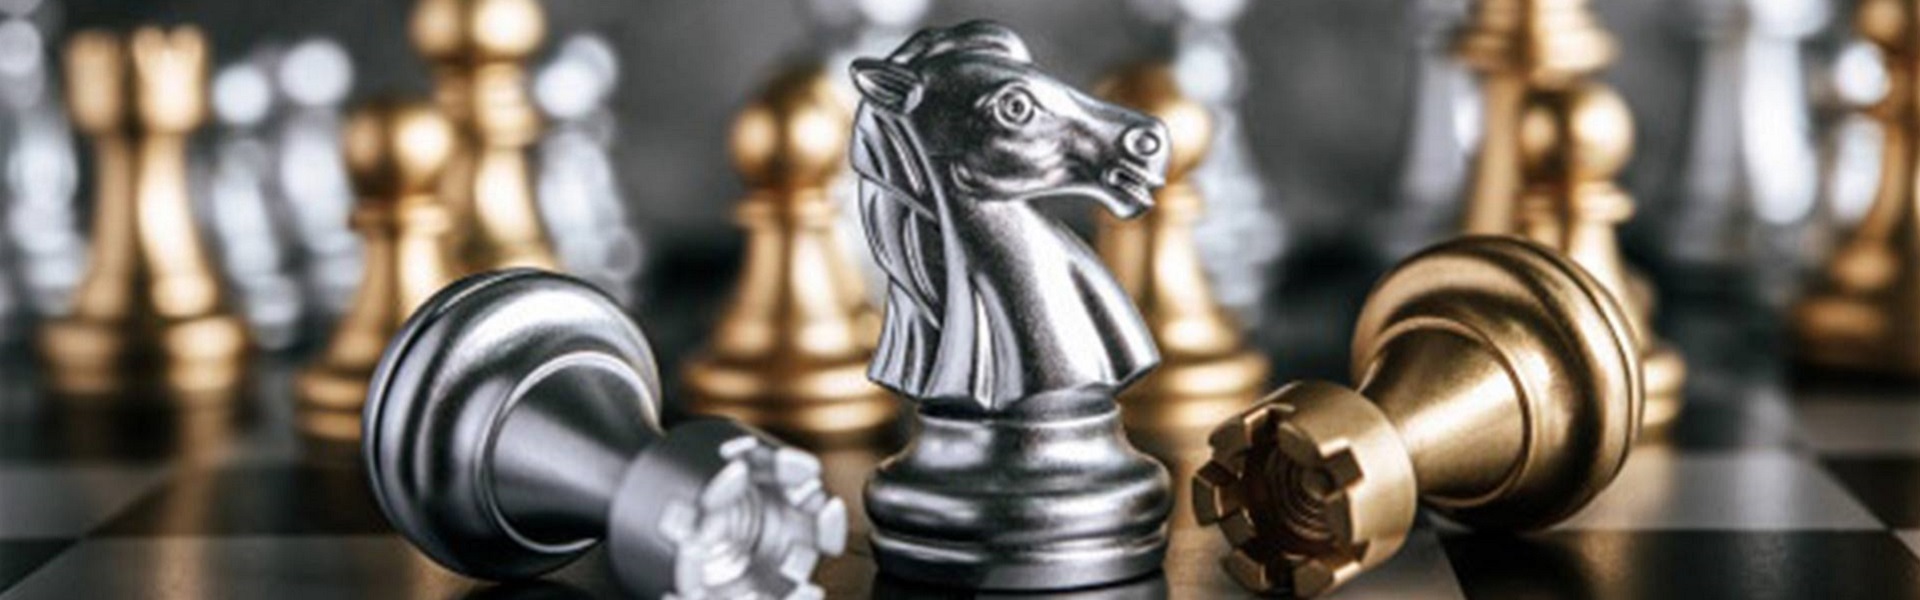 Rent a car Belgrade |  Chess lessons Dubai & New York